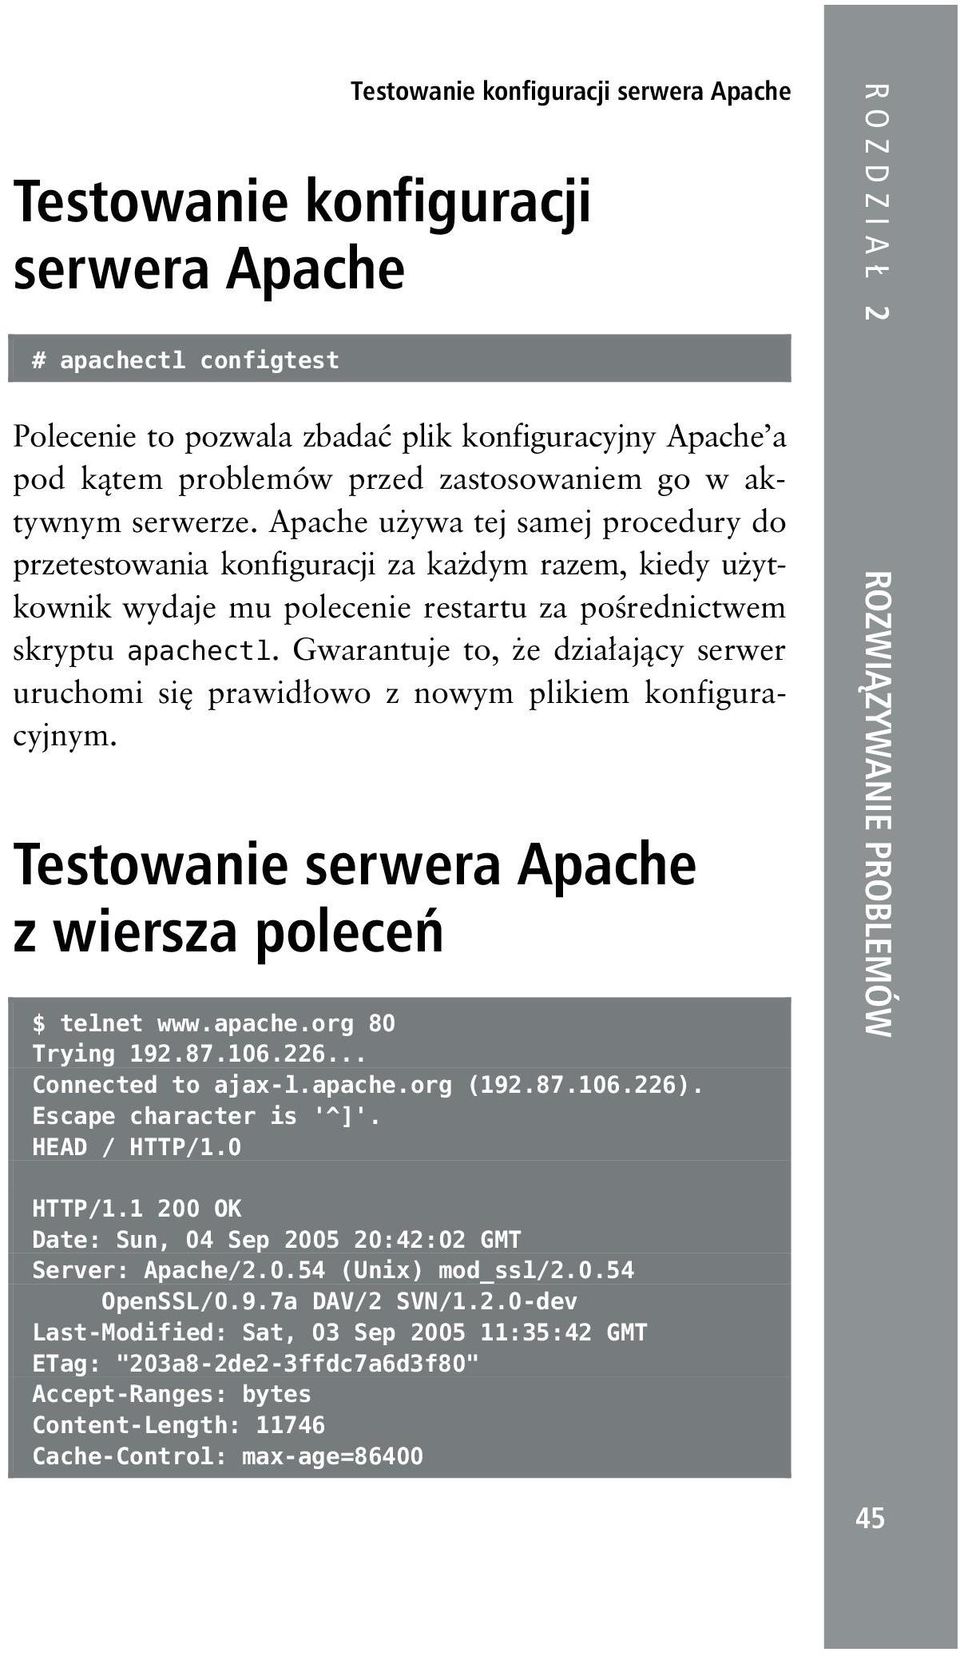 Gwarantuje to, że działający serwer uruchomi się prawidłowo z nowym plikiem konfiguracyjnym. Testowanie serwera Apache z wiersza poleceń $ telnet www.apache.org 80 Trying 192.87.106.226.